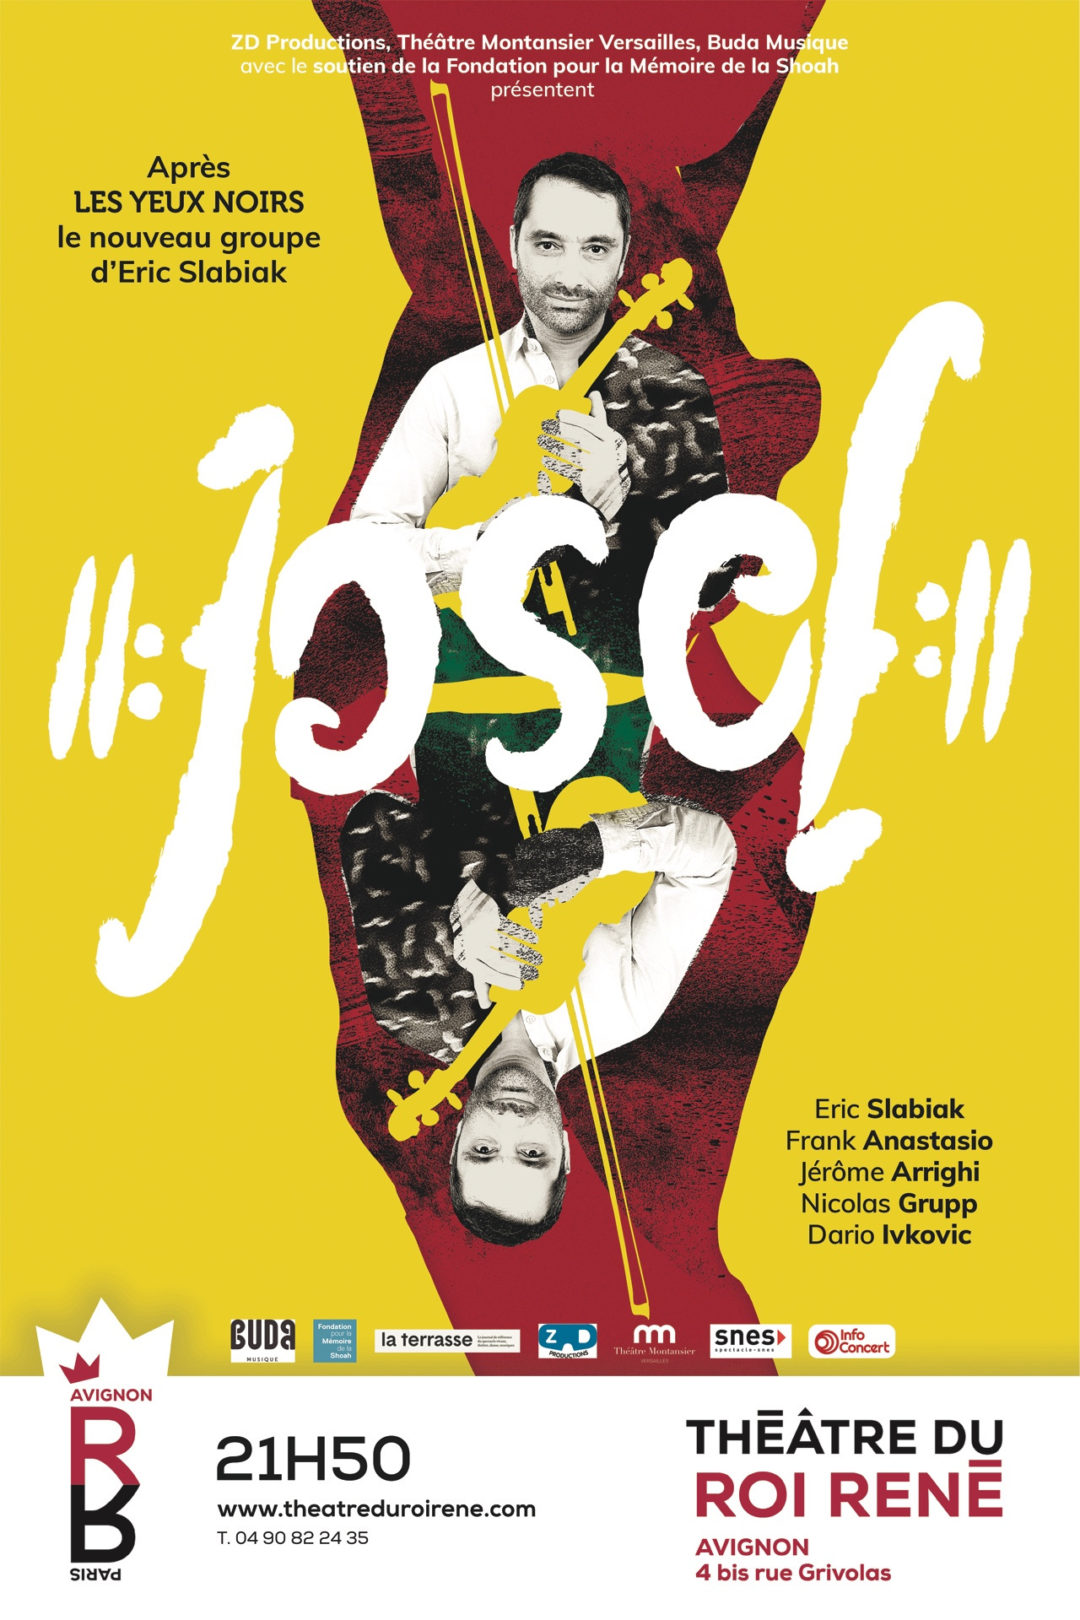 Josef Josef : Un album, des concerts, de la Musique… C’est la fête !